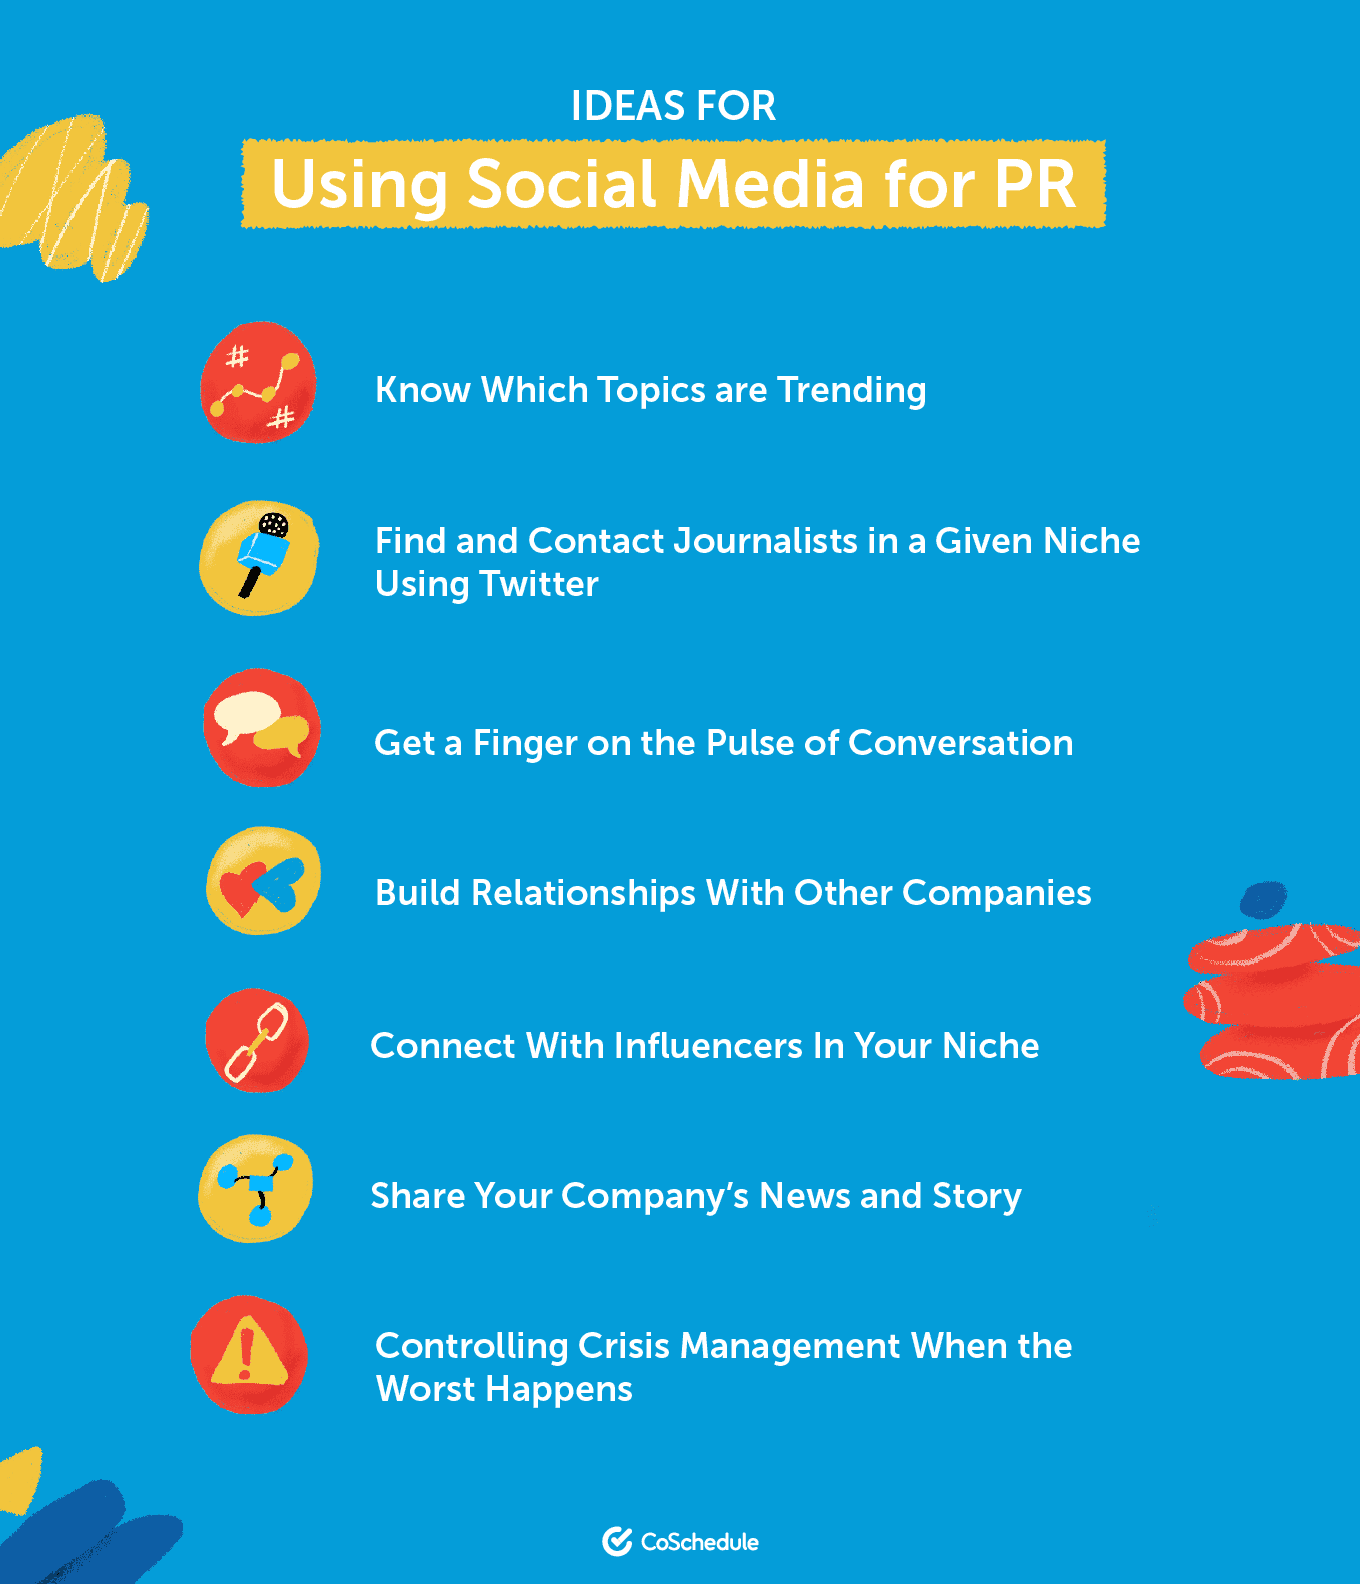 Ideas for using social media for PR